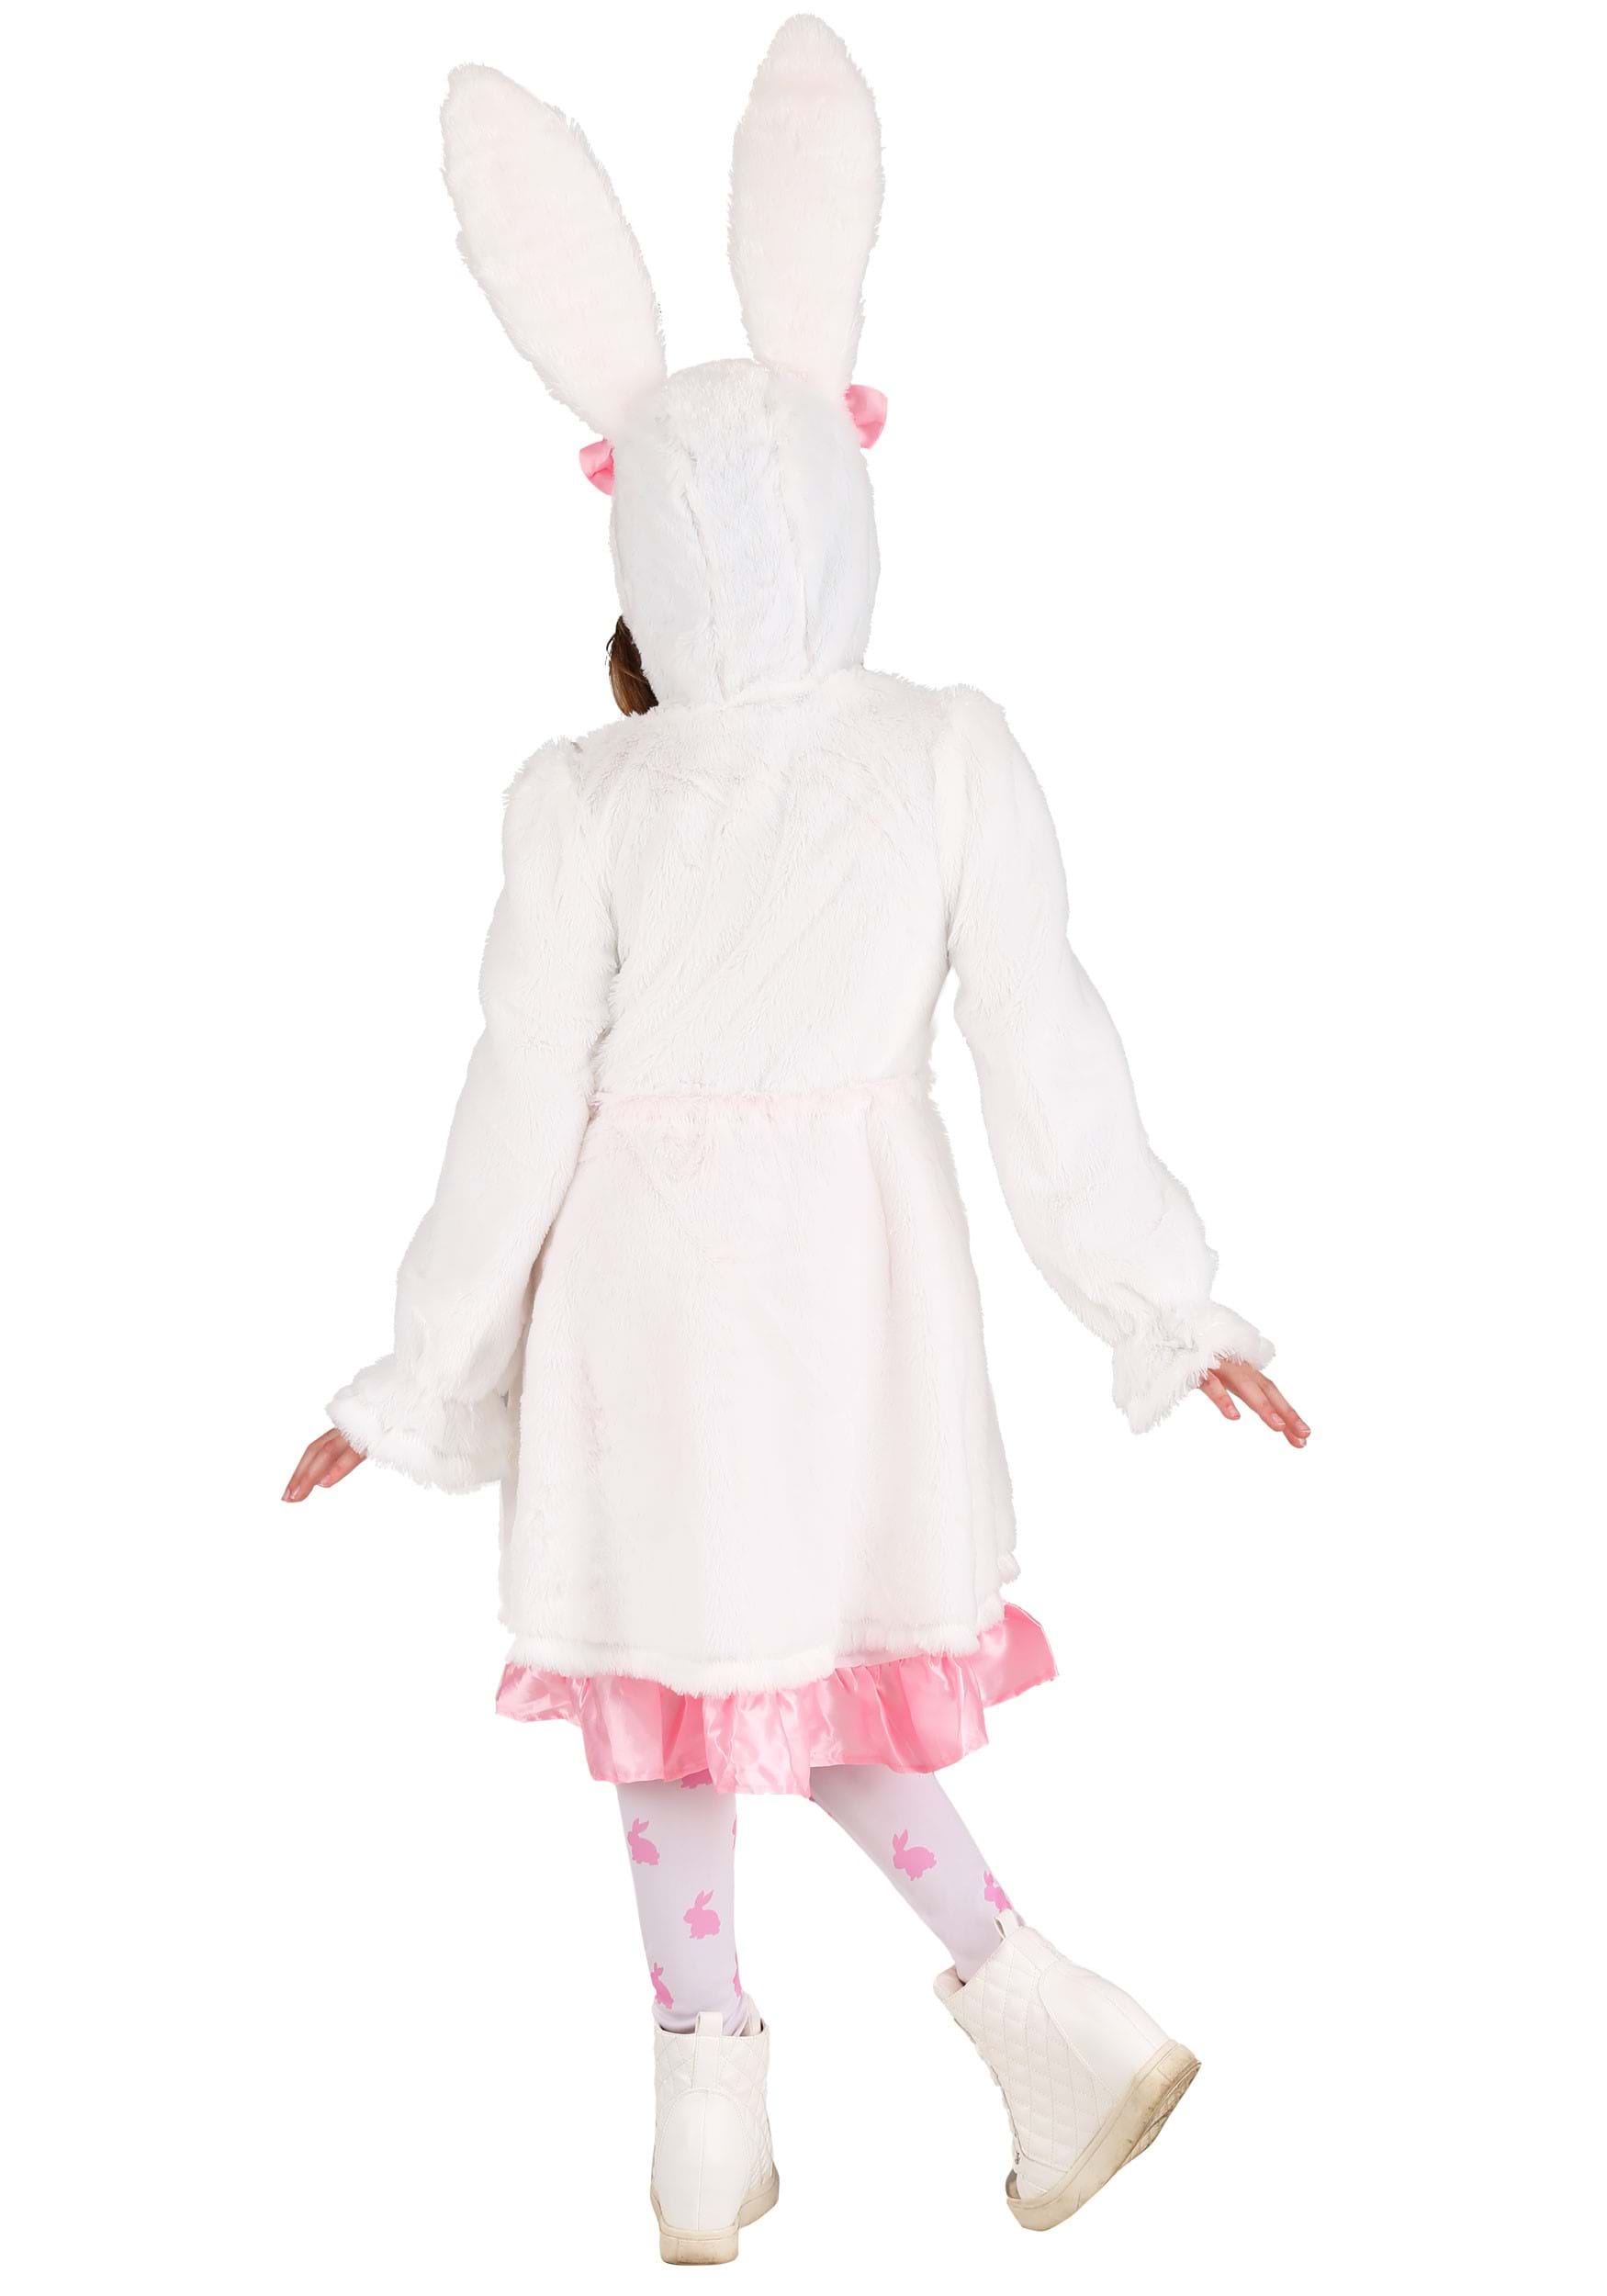 Fuzzy White Rabbit Hooded Costume Dress For Girl's